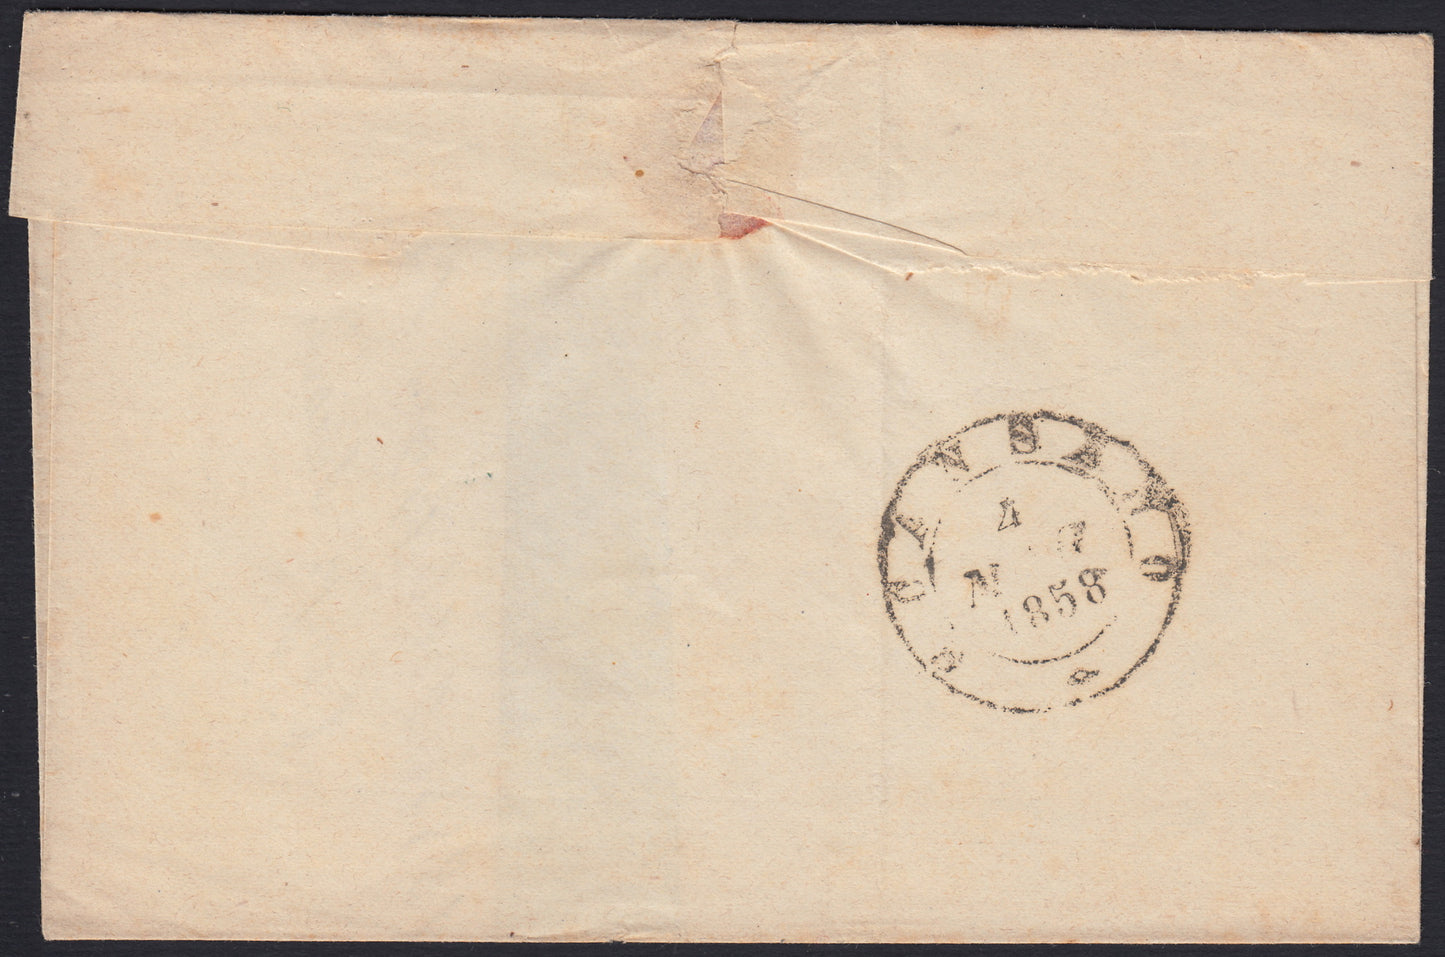 TosSP22 - 1858 - Lettera spedita da Pitigliano per Scansano 3/5/58 affrancata con 2 crazie verde grigio giallastro (13b).